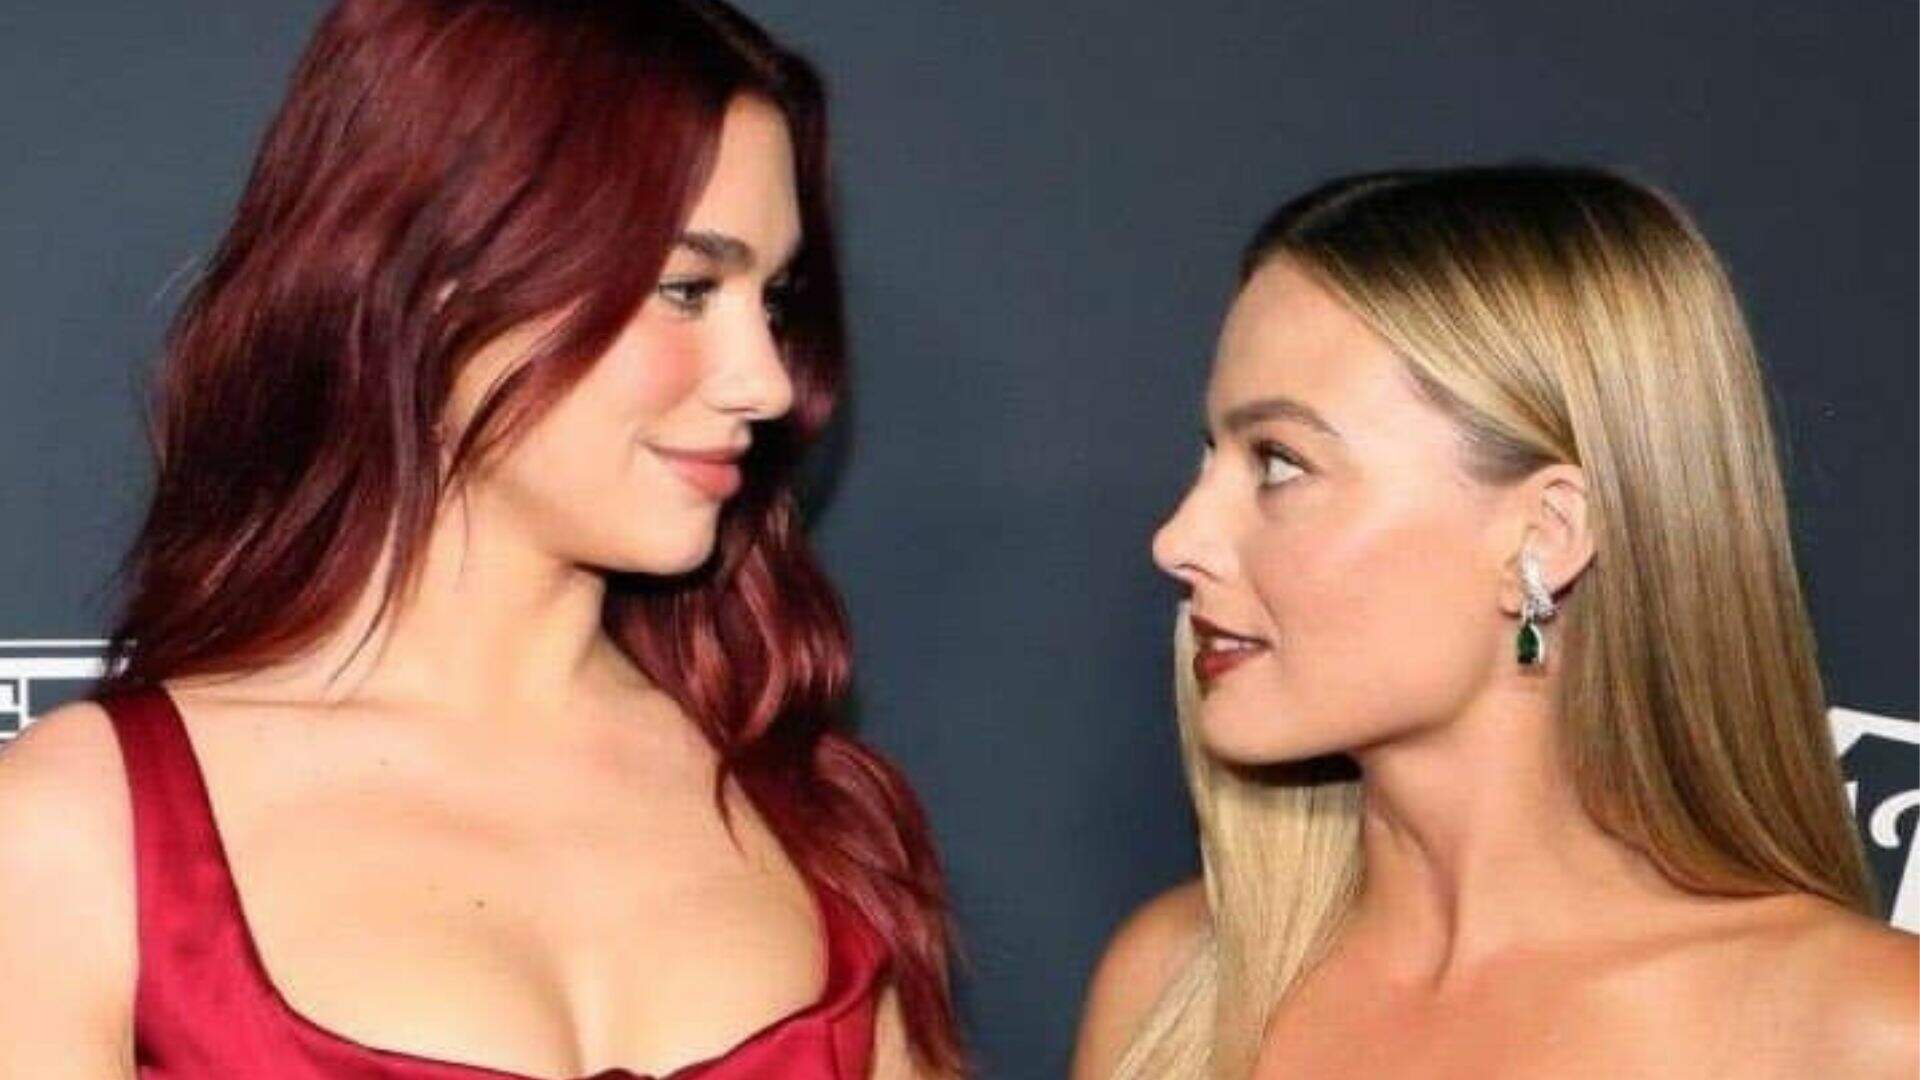 Encontro de divas! Dua Lipa e Margot Robbie roubam a cena em evento em Los Angeles - Metropolitana FM